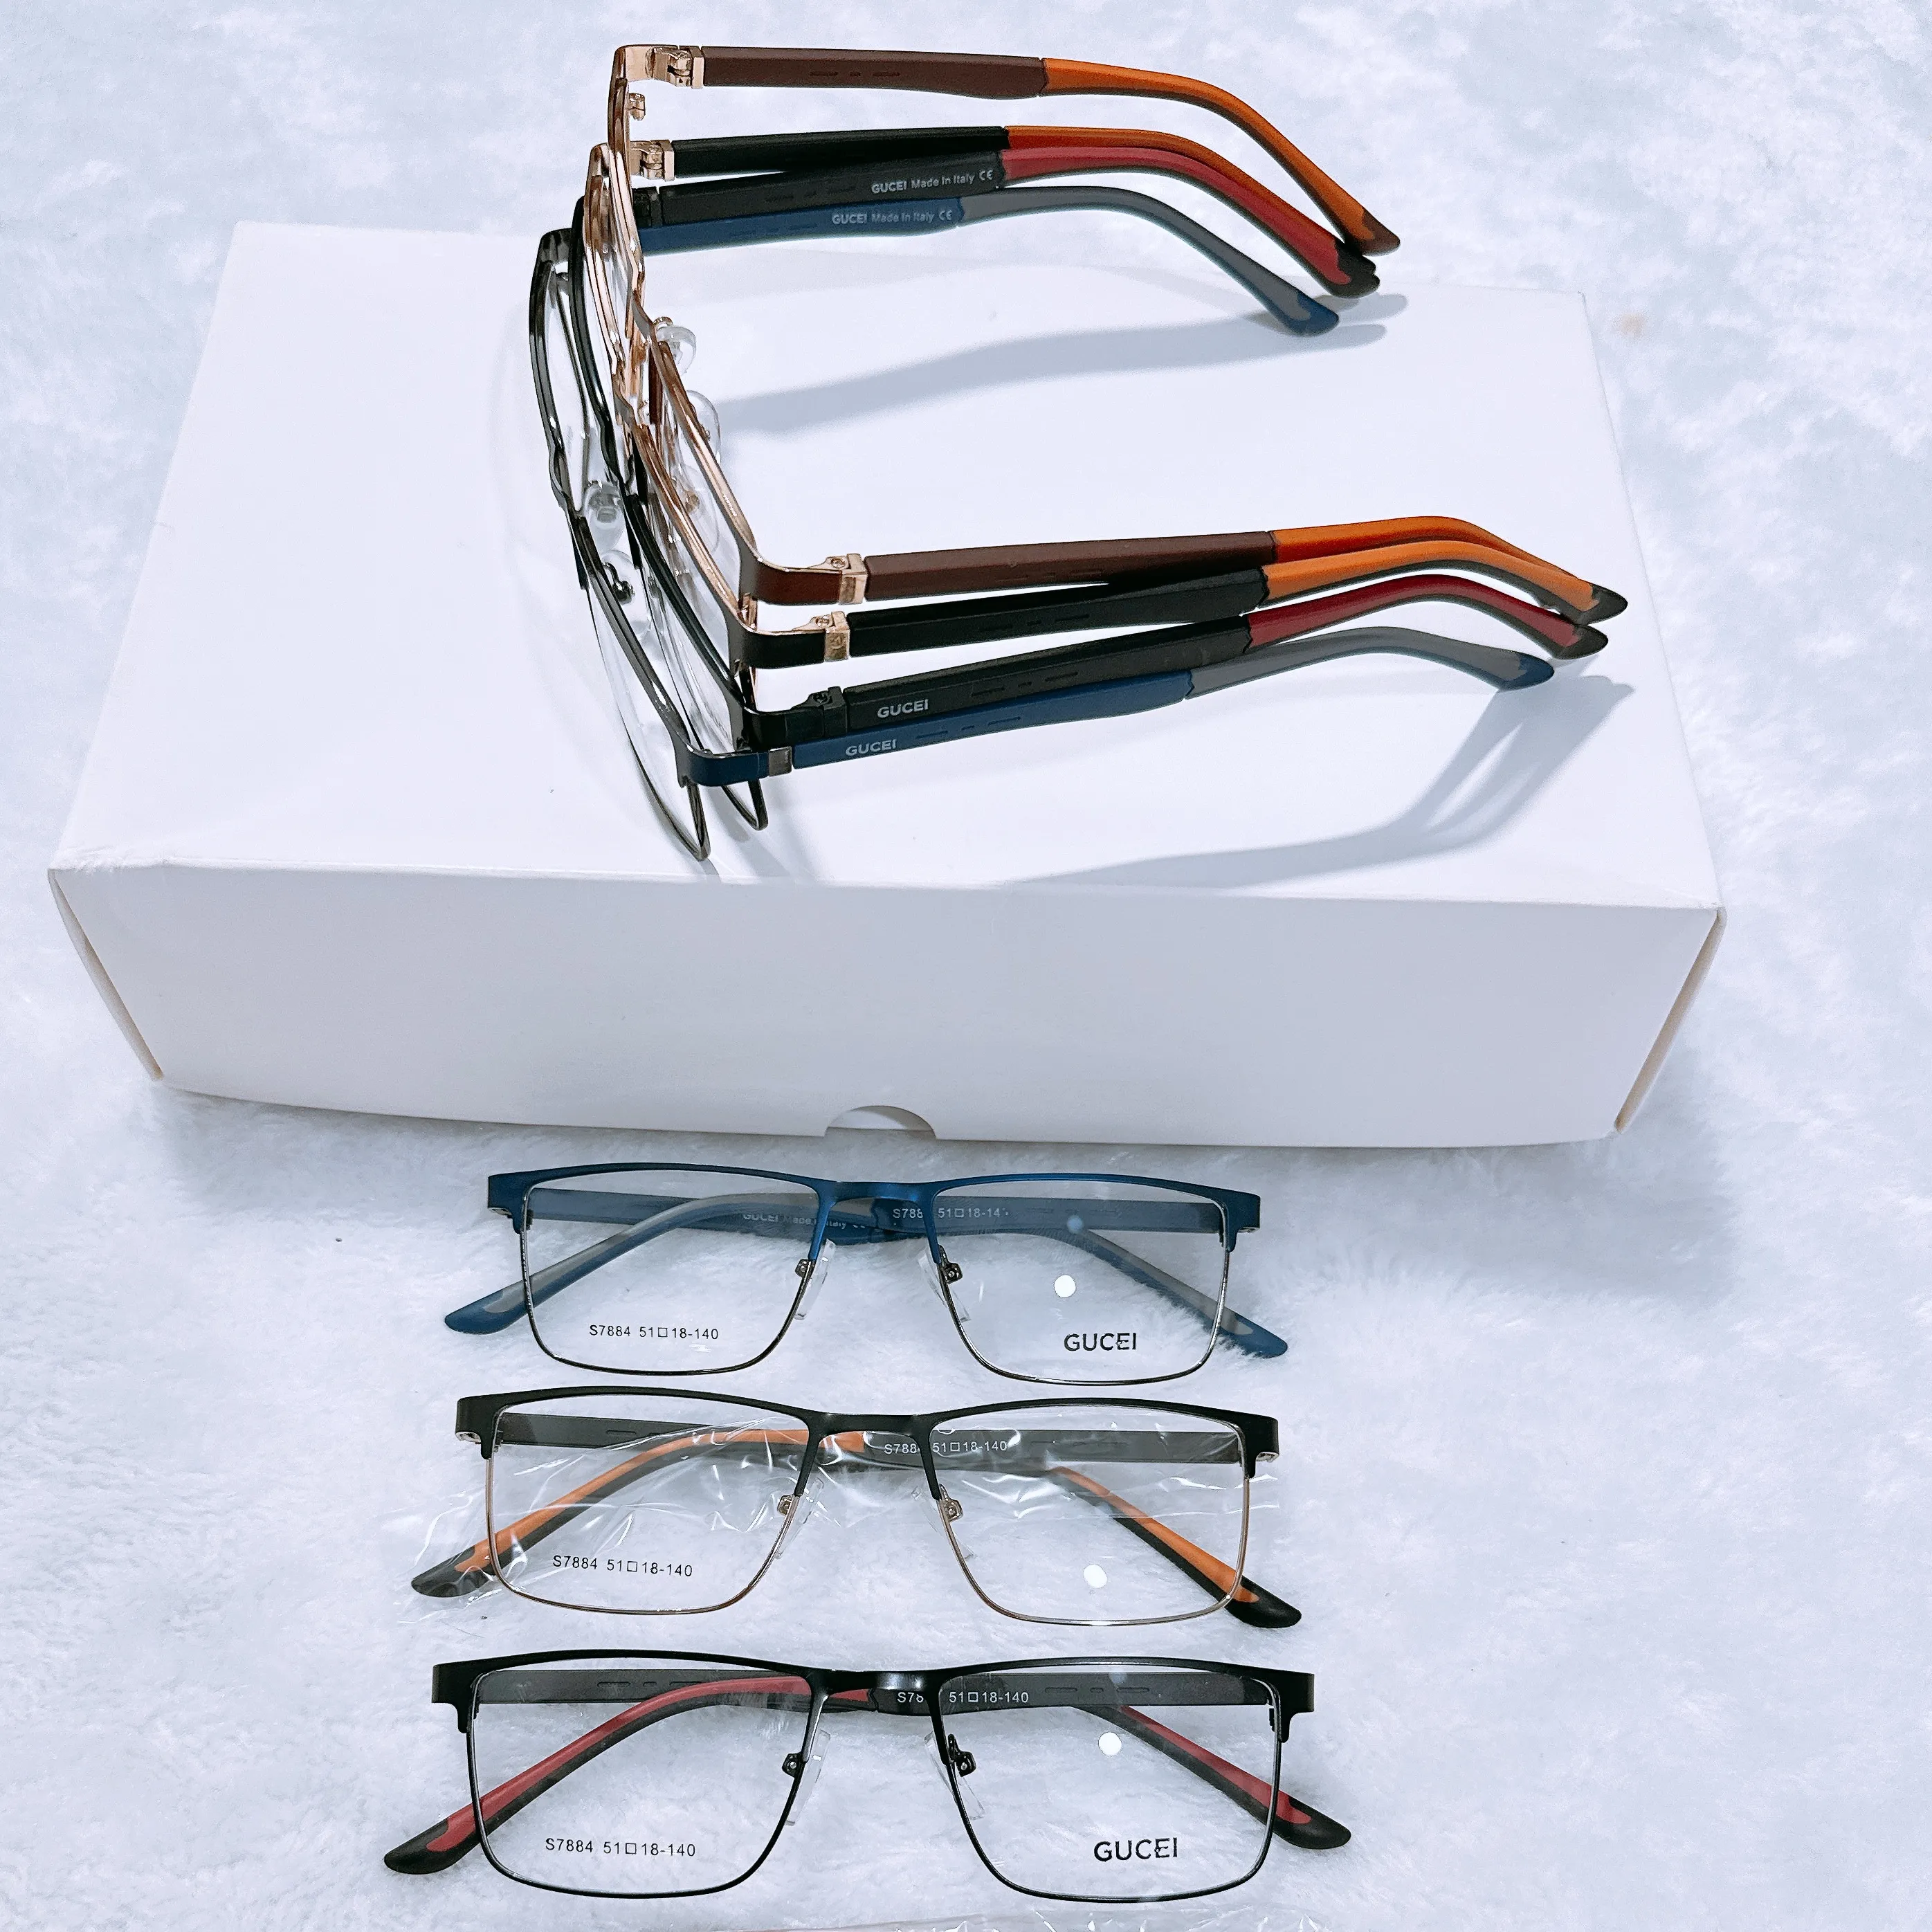 مخزون نظارات طبية متنوعة بنصف إطار كامل من الفولاذ المقاوم للصدأ إطارات بصرية نظارات طبية مربعة عالية الجودة